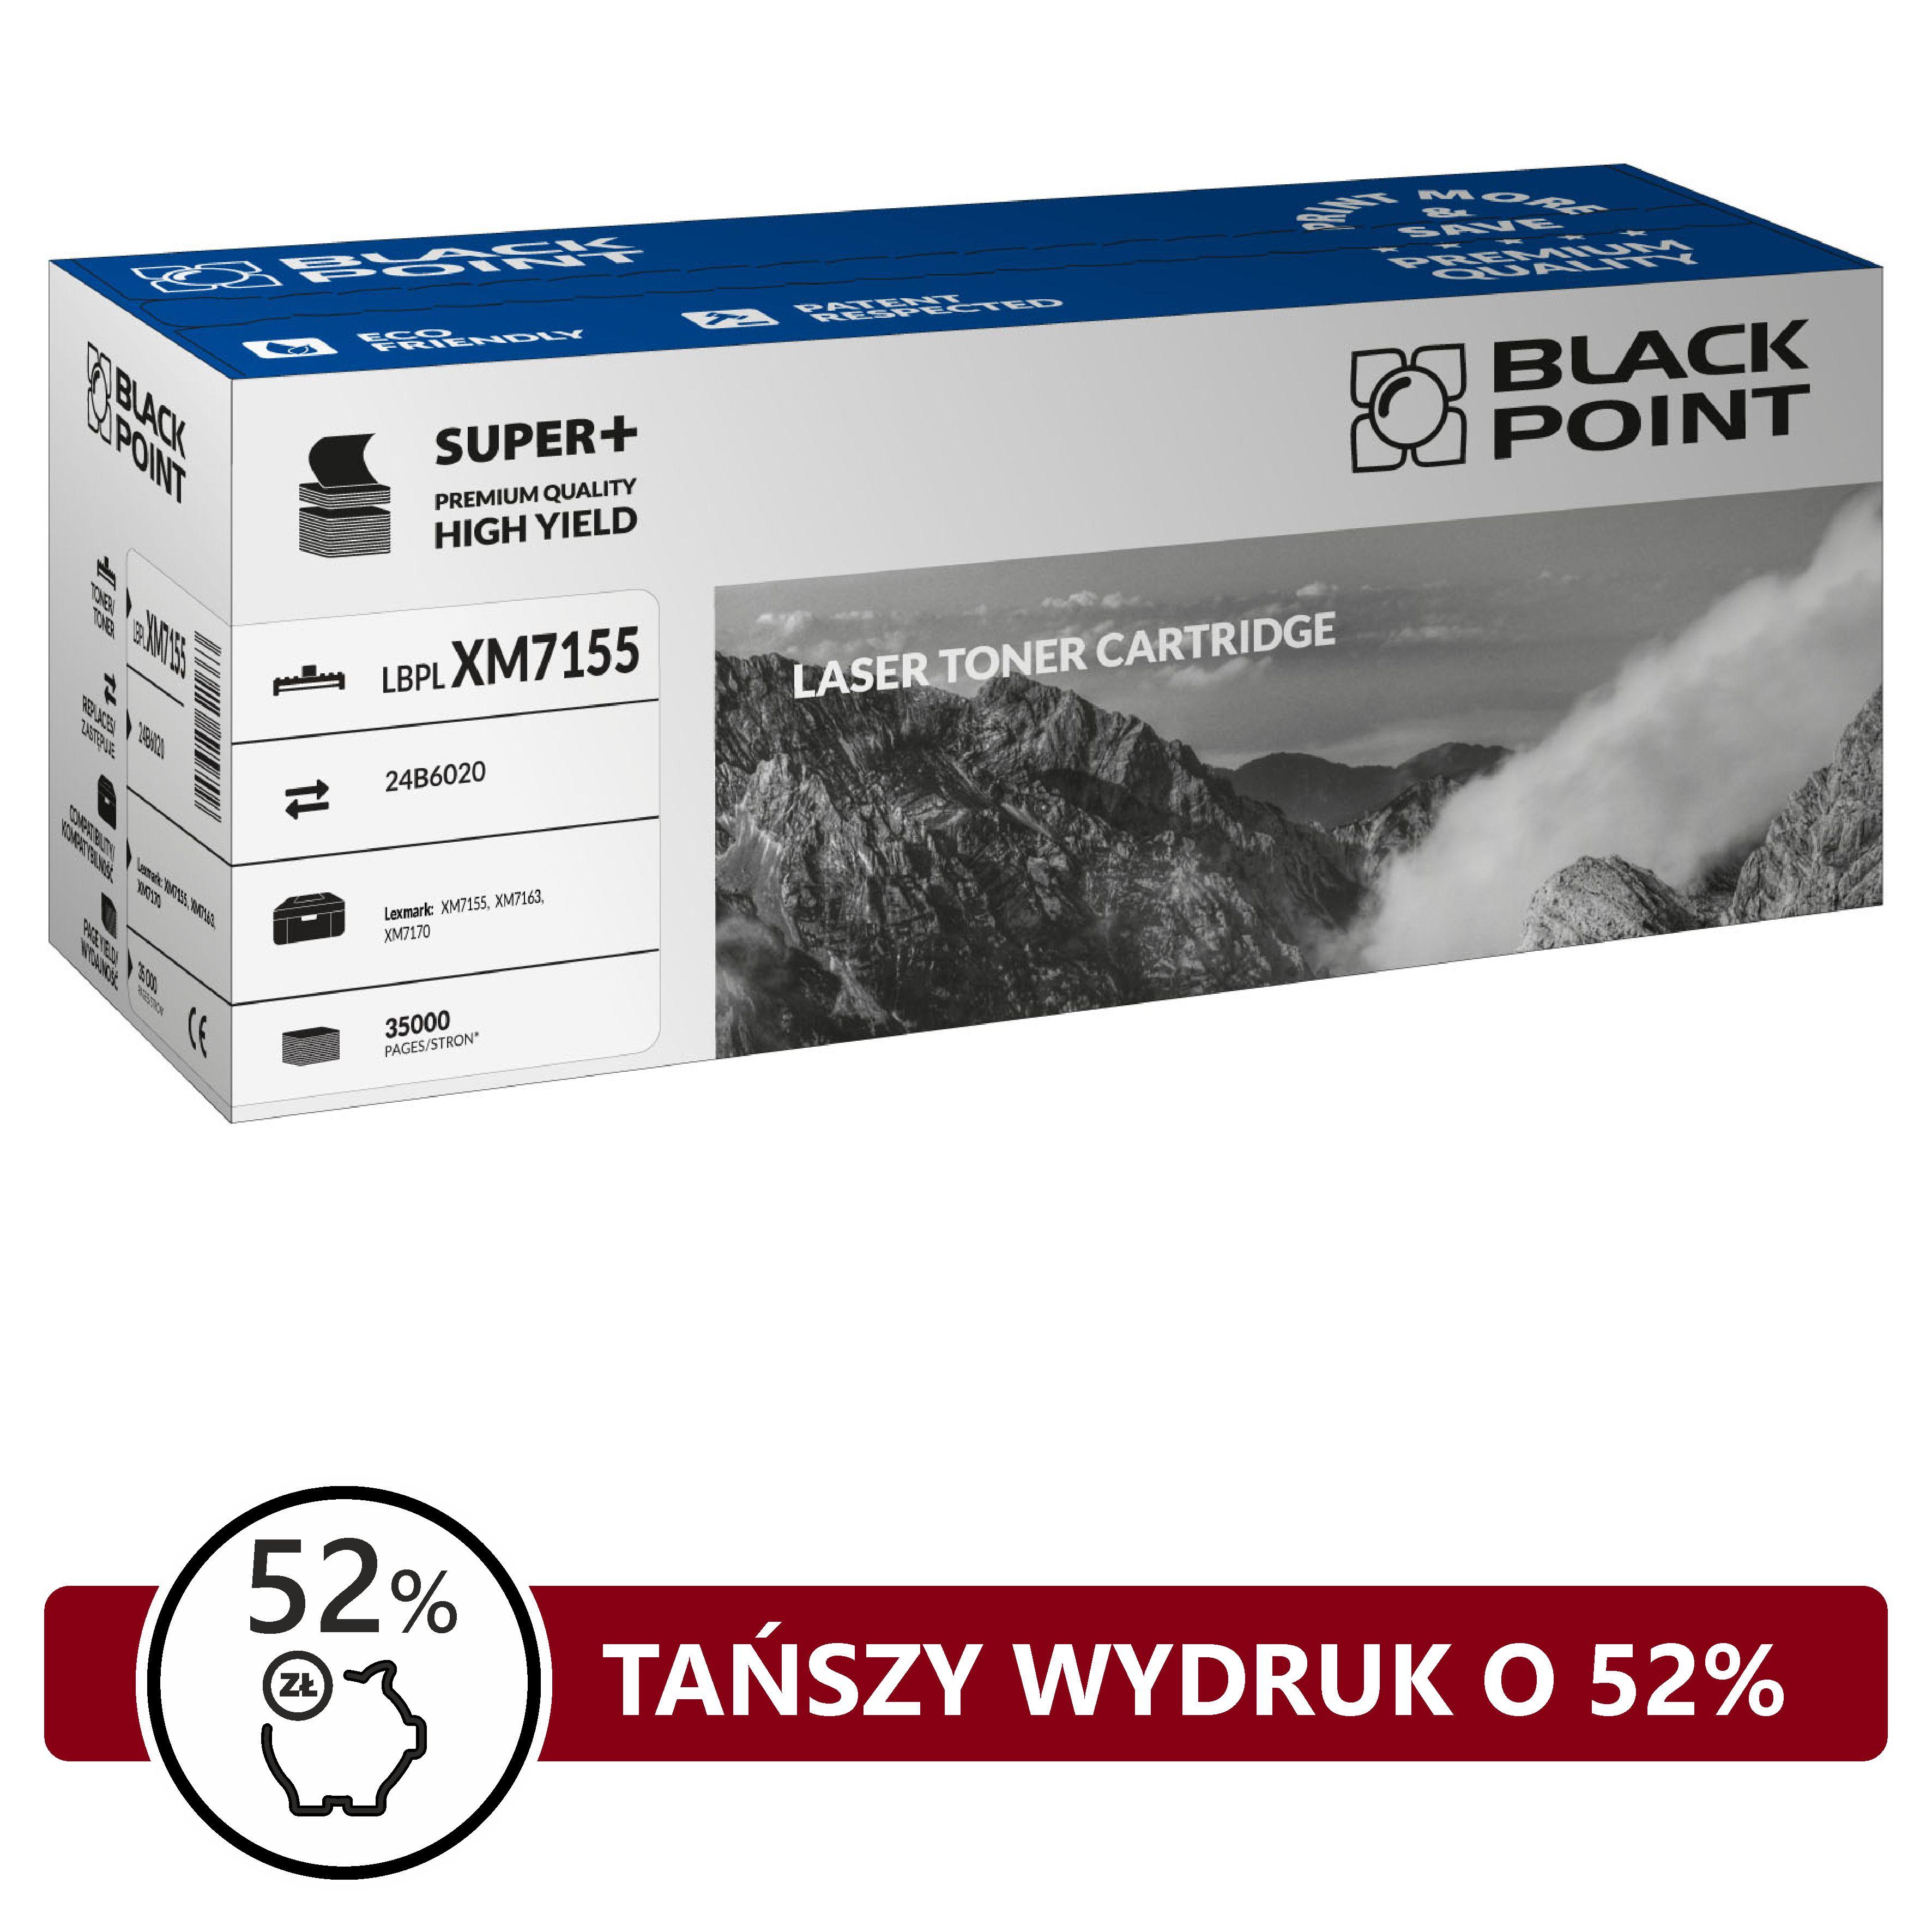 CMYK - [LBPLXM7155] Toner Black Point S+ (Lexmark 24B6020)